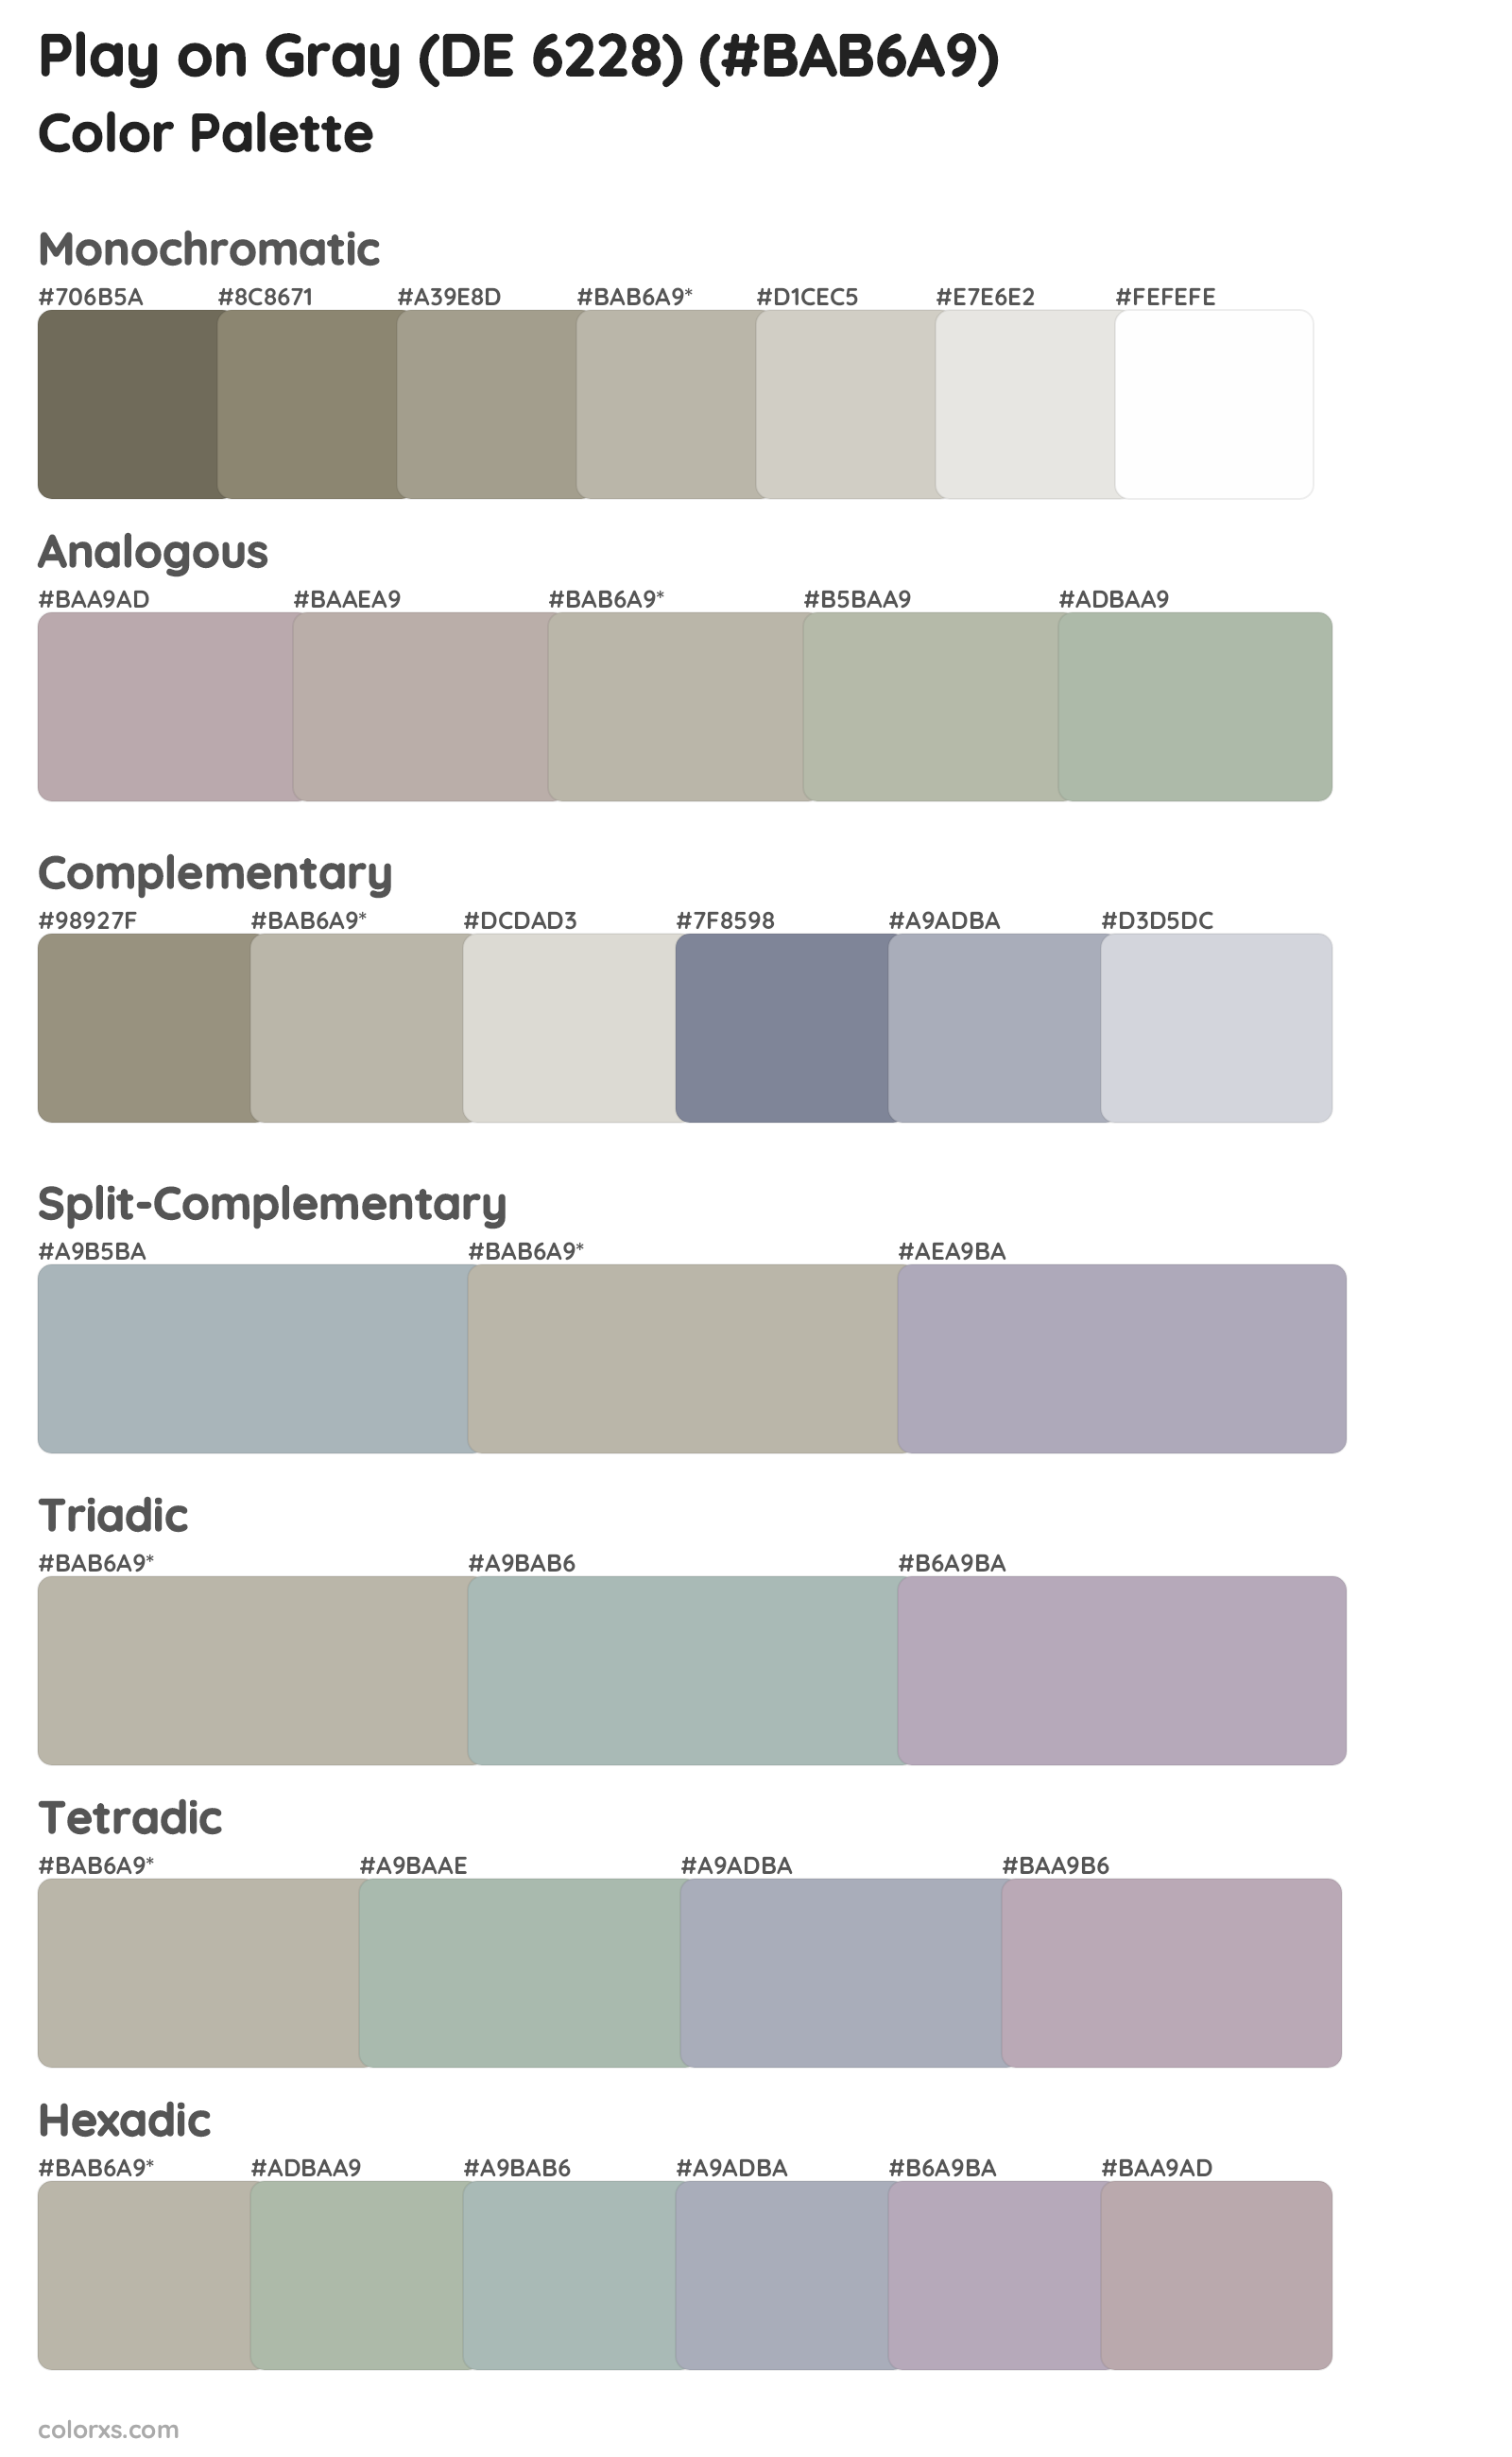 Play on Gray (DE 6228) Color Scheme Palettes